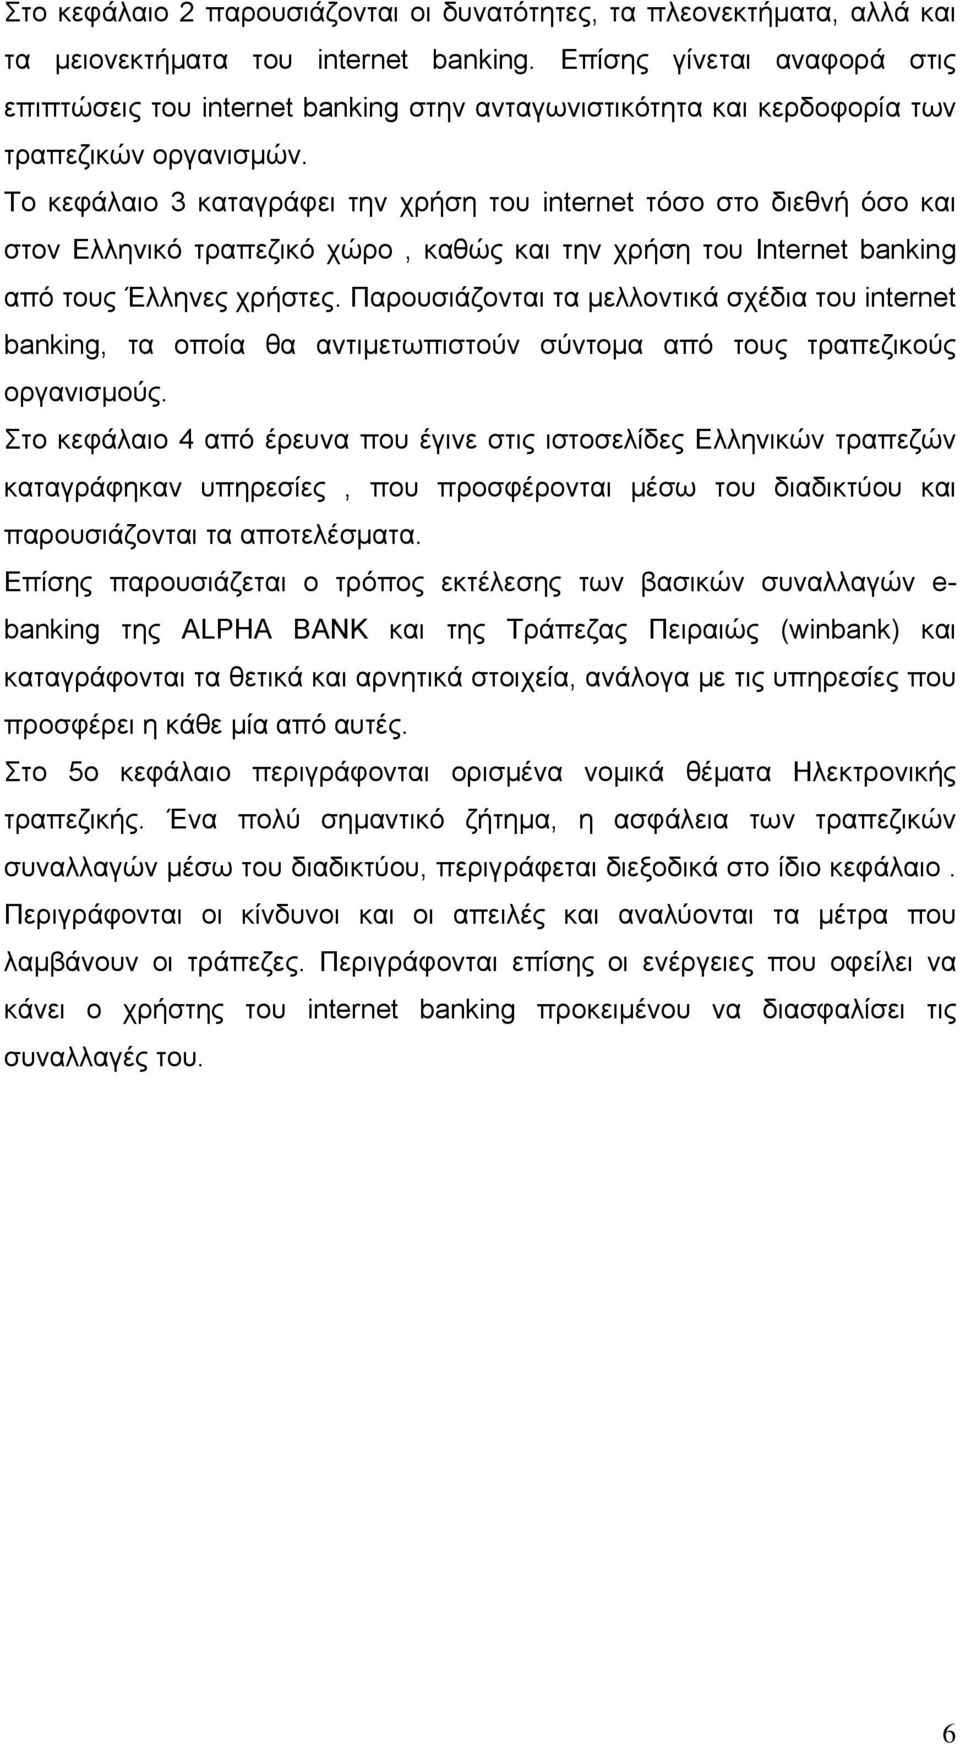 Το κεφάλαιο 3 καταγράφει την χρήση του internet τόσο στο διεθνή όσο και στον Ελληνικό τραπεζικό χώρο, καθώς και την χρήση του Internet banking από τους Έλληνες χρήστες.